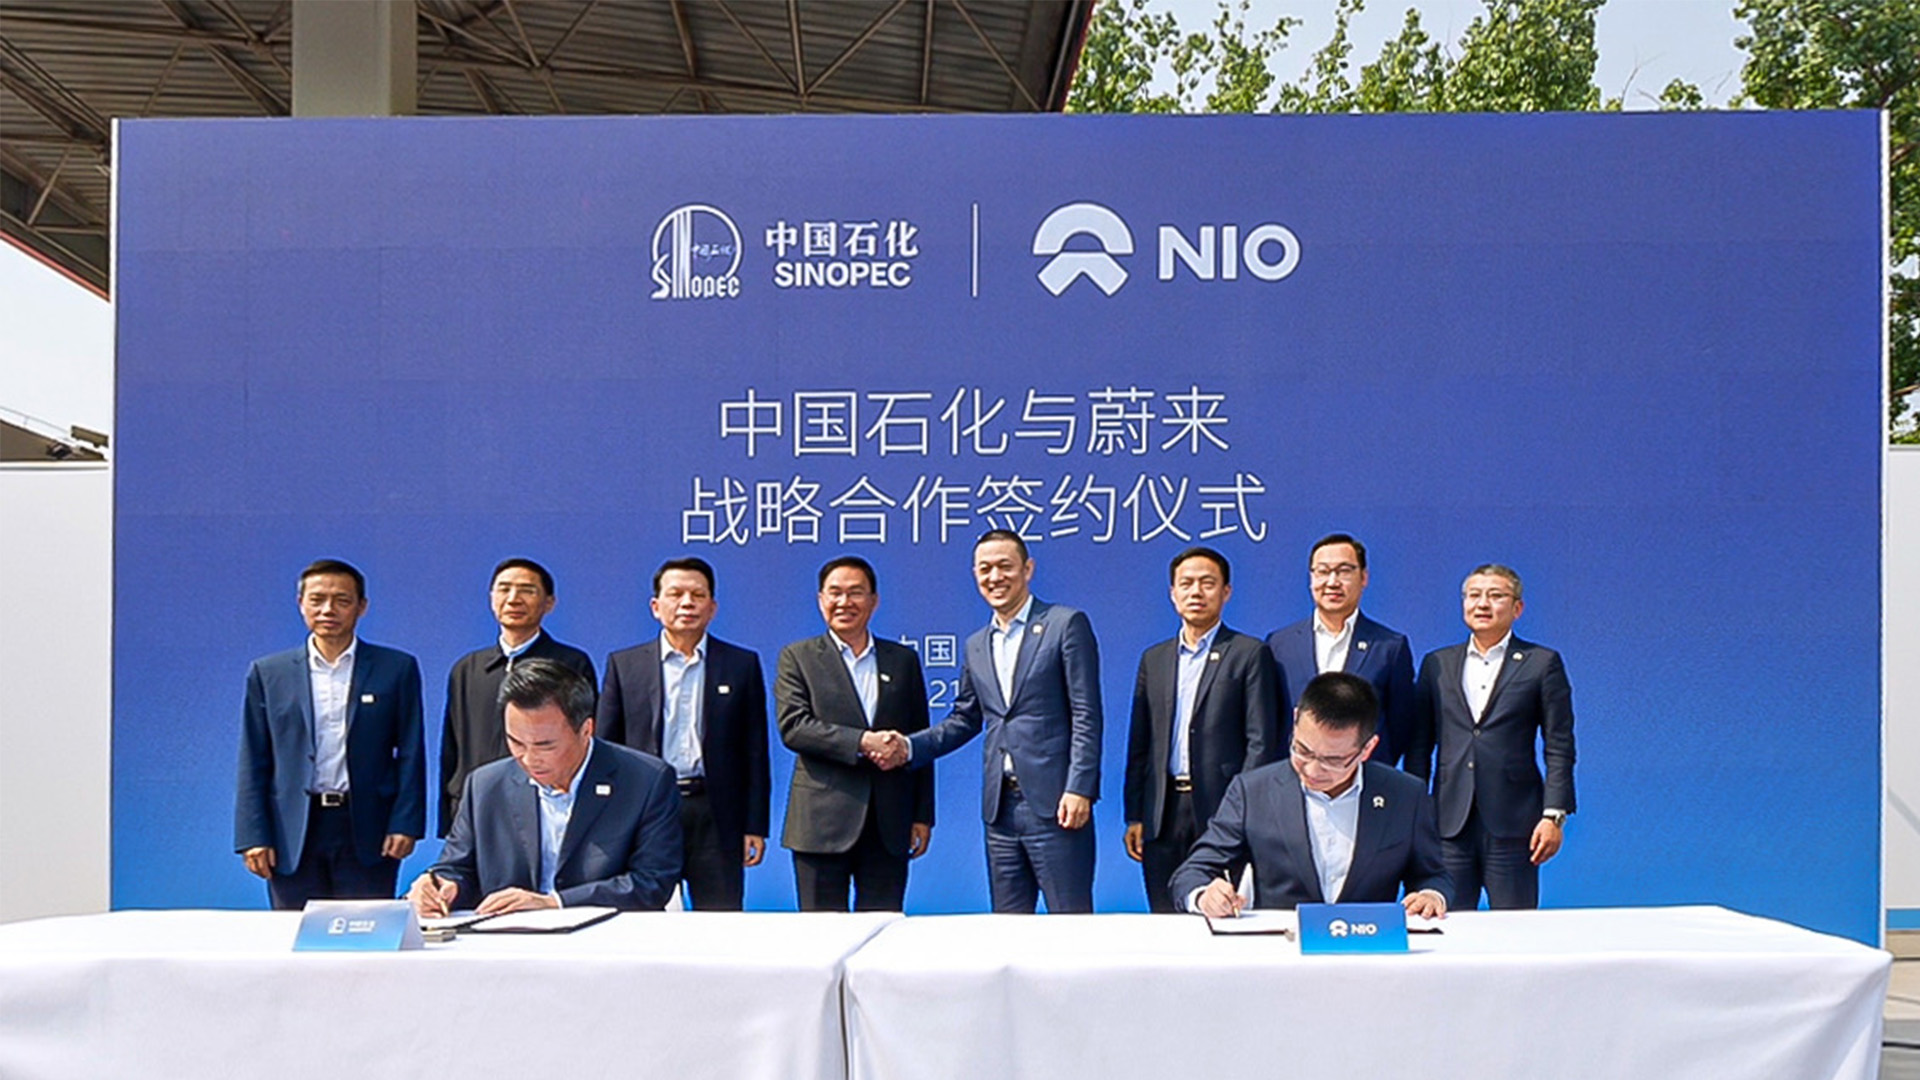 首座蔚来第二代换电站投入运营  蔚来与中国石化签署战略合作协议-NIO蔚来新闻